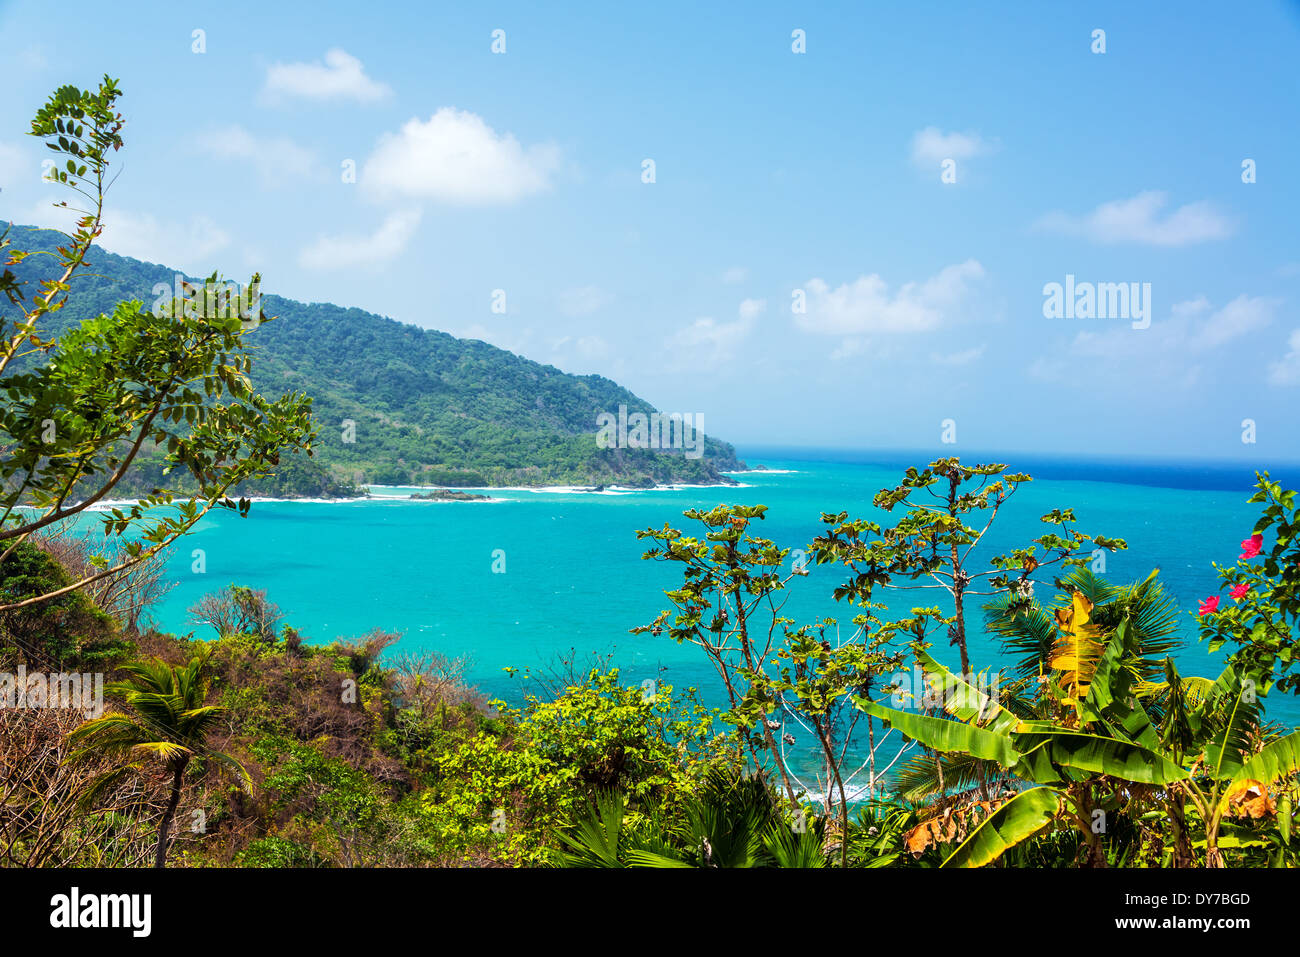 Vista de agua turquesa del Caribe en la costa de Panamá Foto de stock